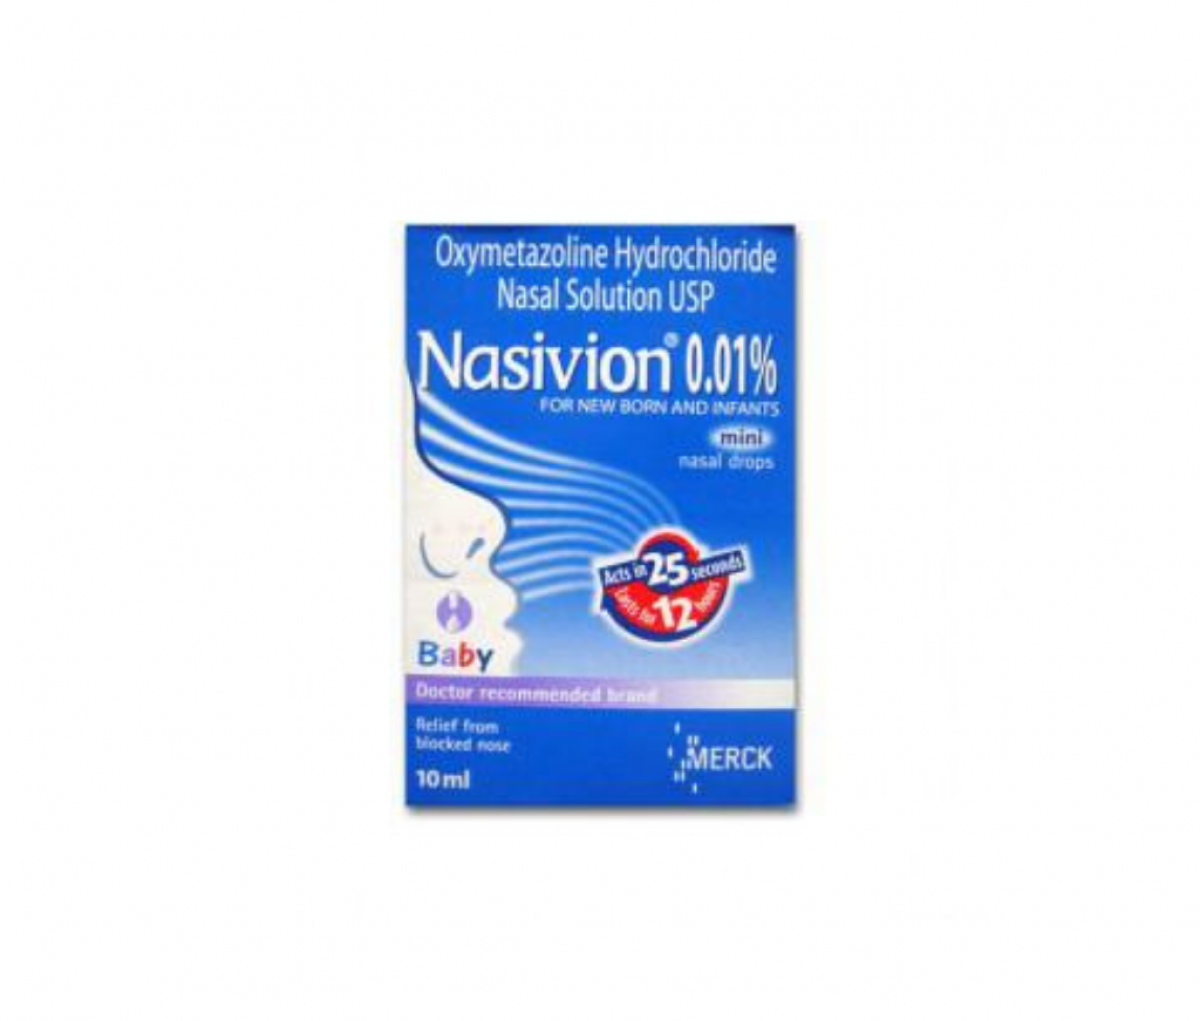 Nasivion Mini 0.01% Nasal solution 10ml